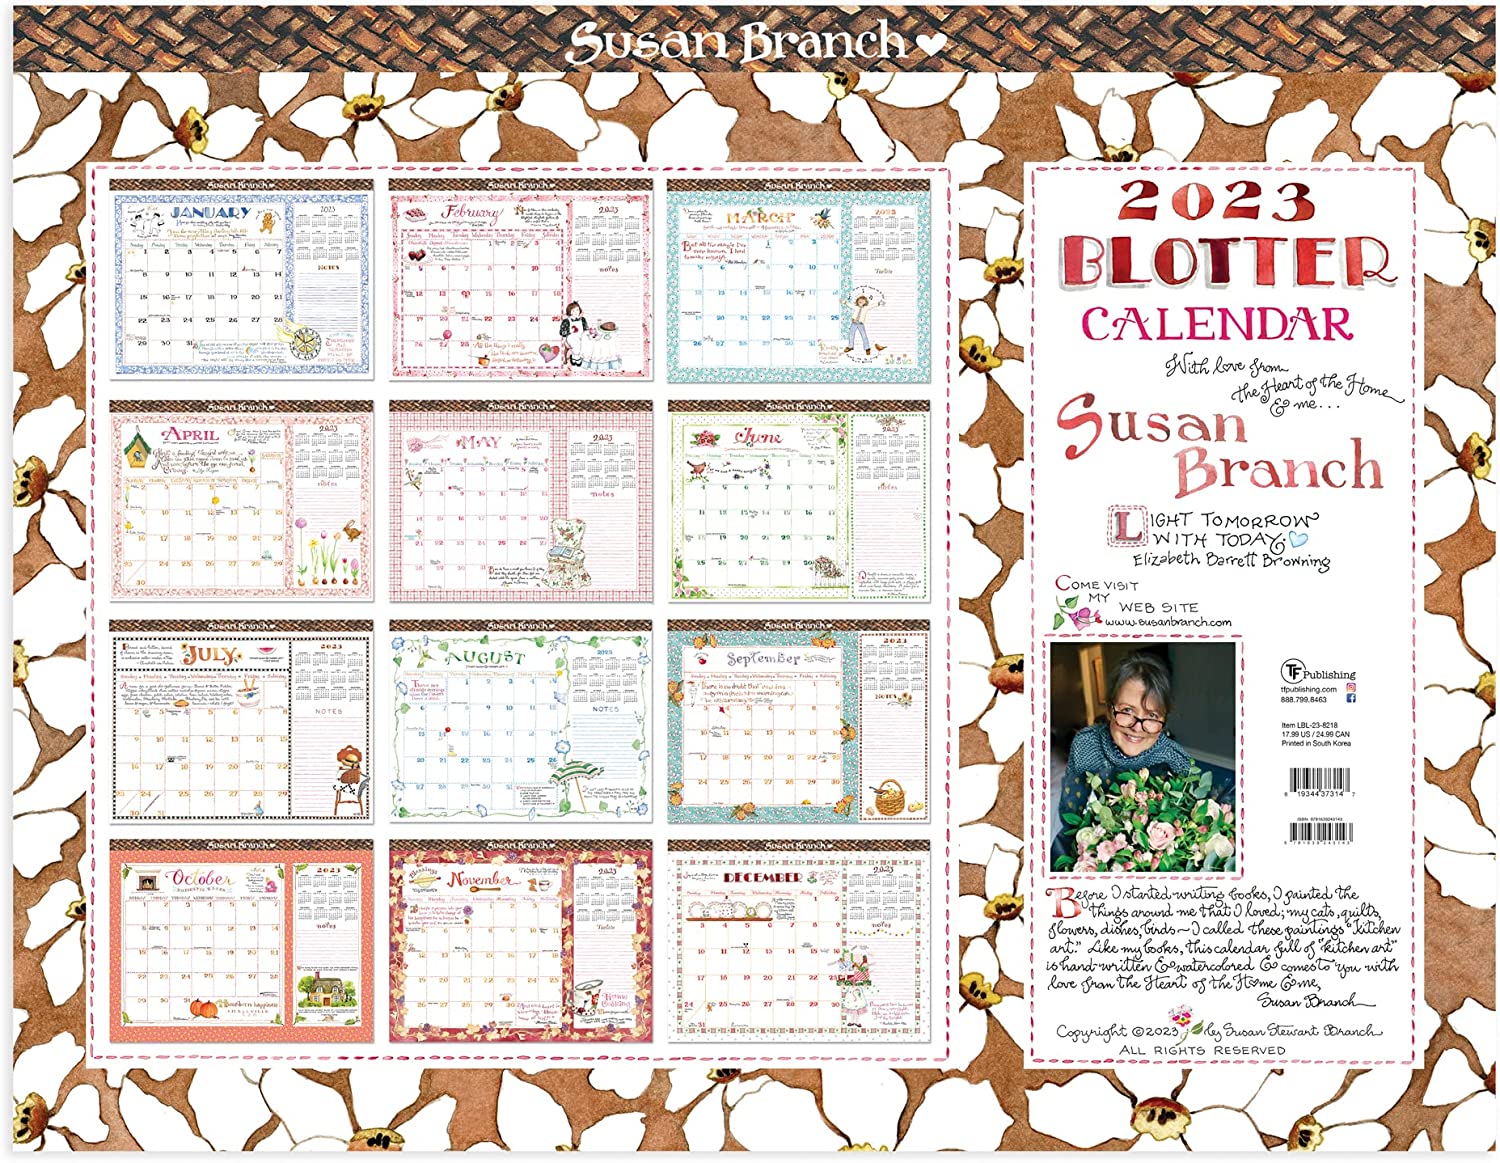 susan branch blotter calendar